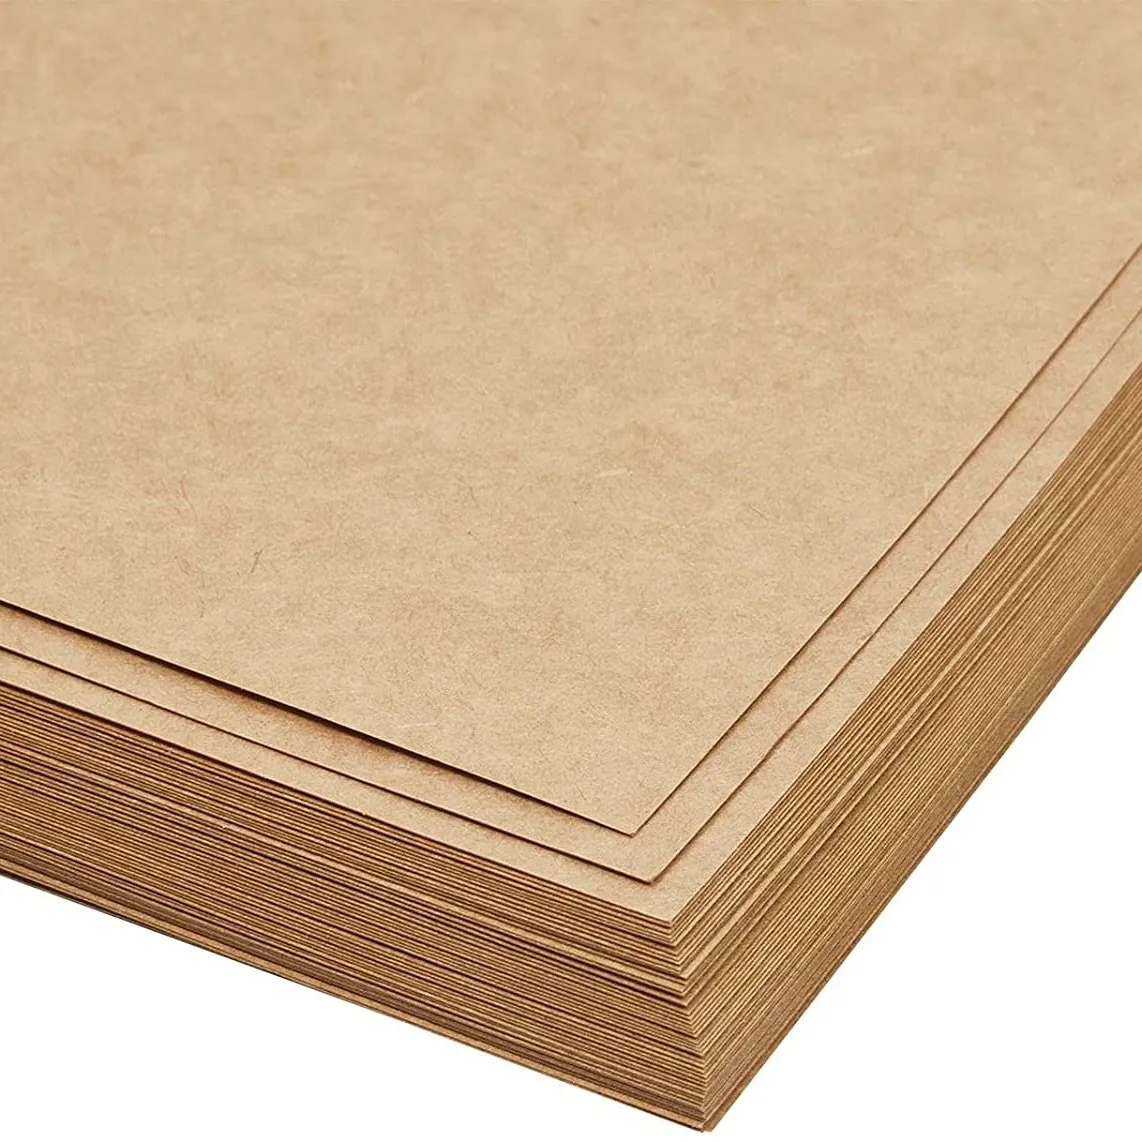 Feuilles de papier Kraft non revêtues, 220g, A4, brun, artisanal, pour bricolage, papier imprimable